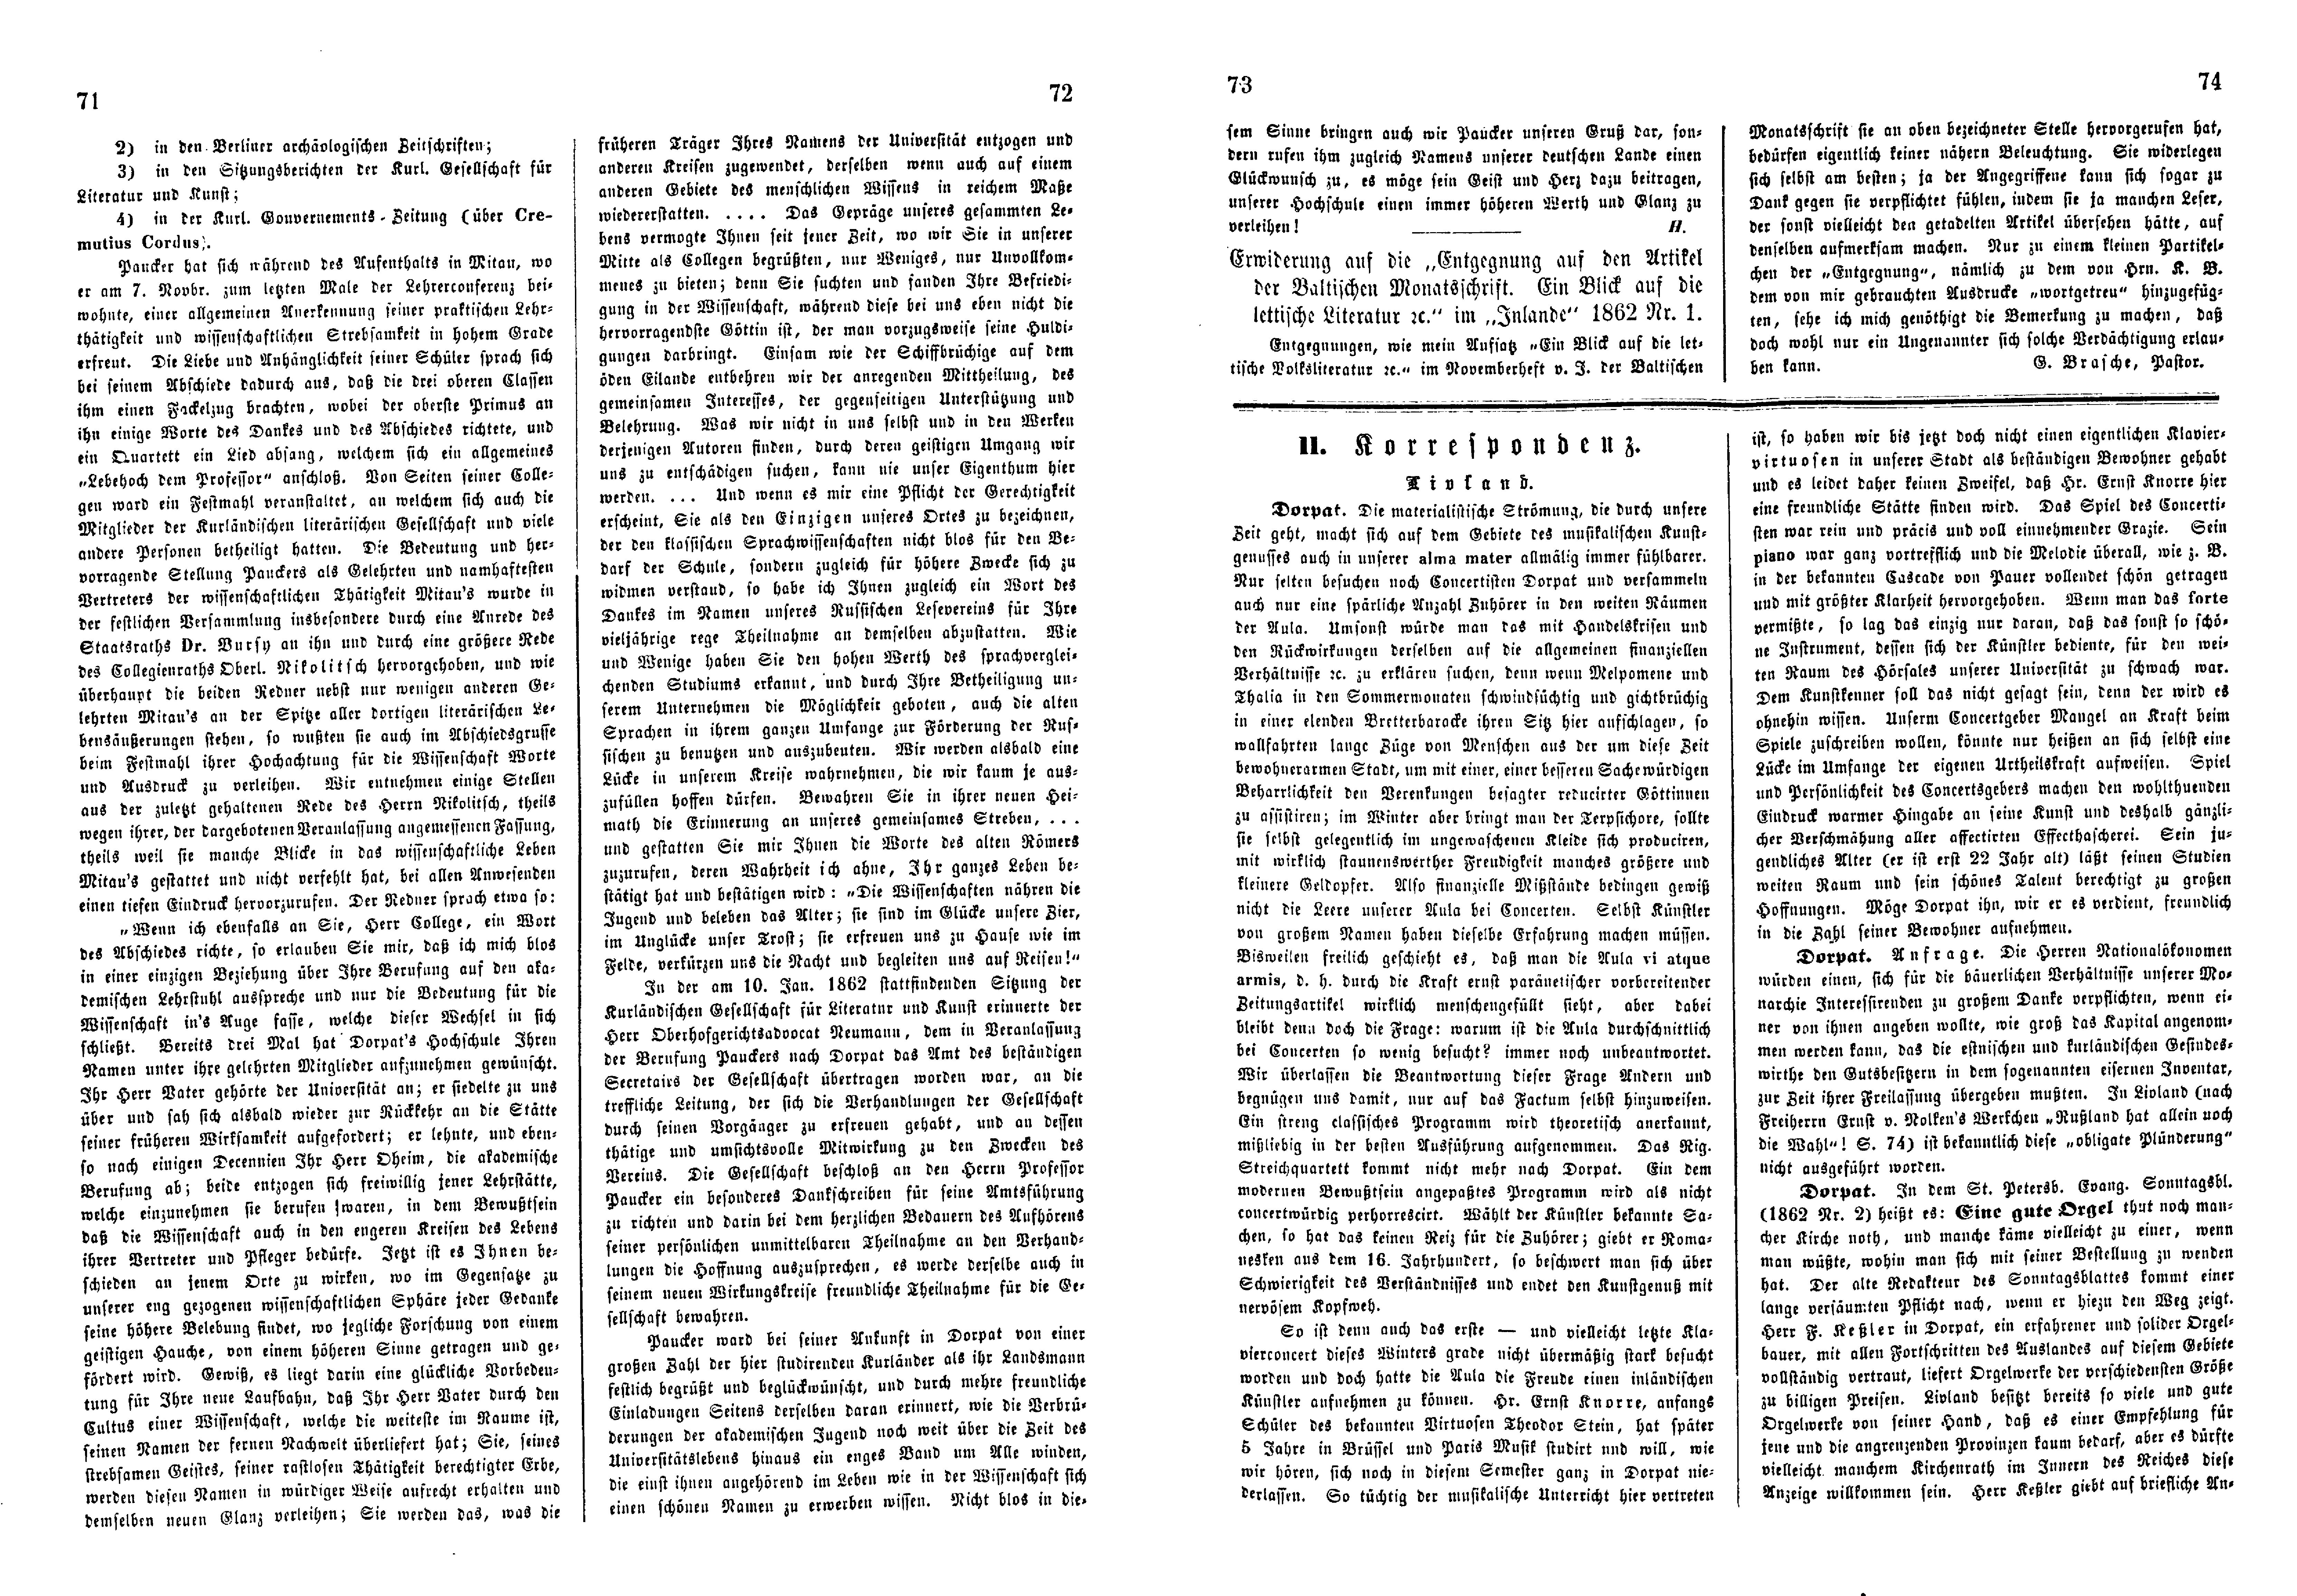 Das Inland [27] (1862) | 22. (71-74) Haupttext